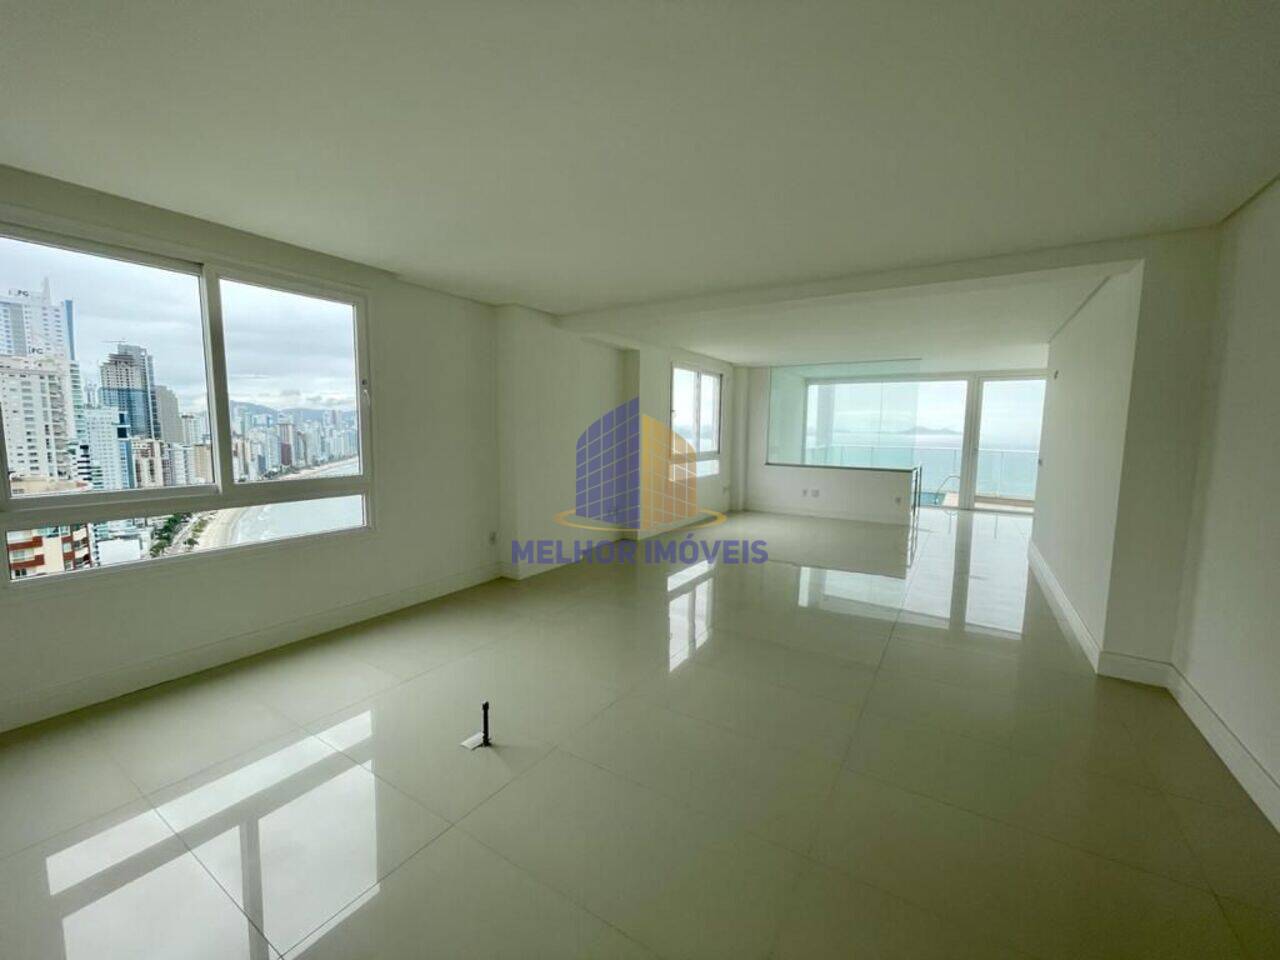 Apartamento triplex Frente Mar, Balneário Camboriú - SC